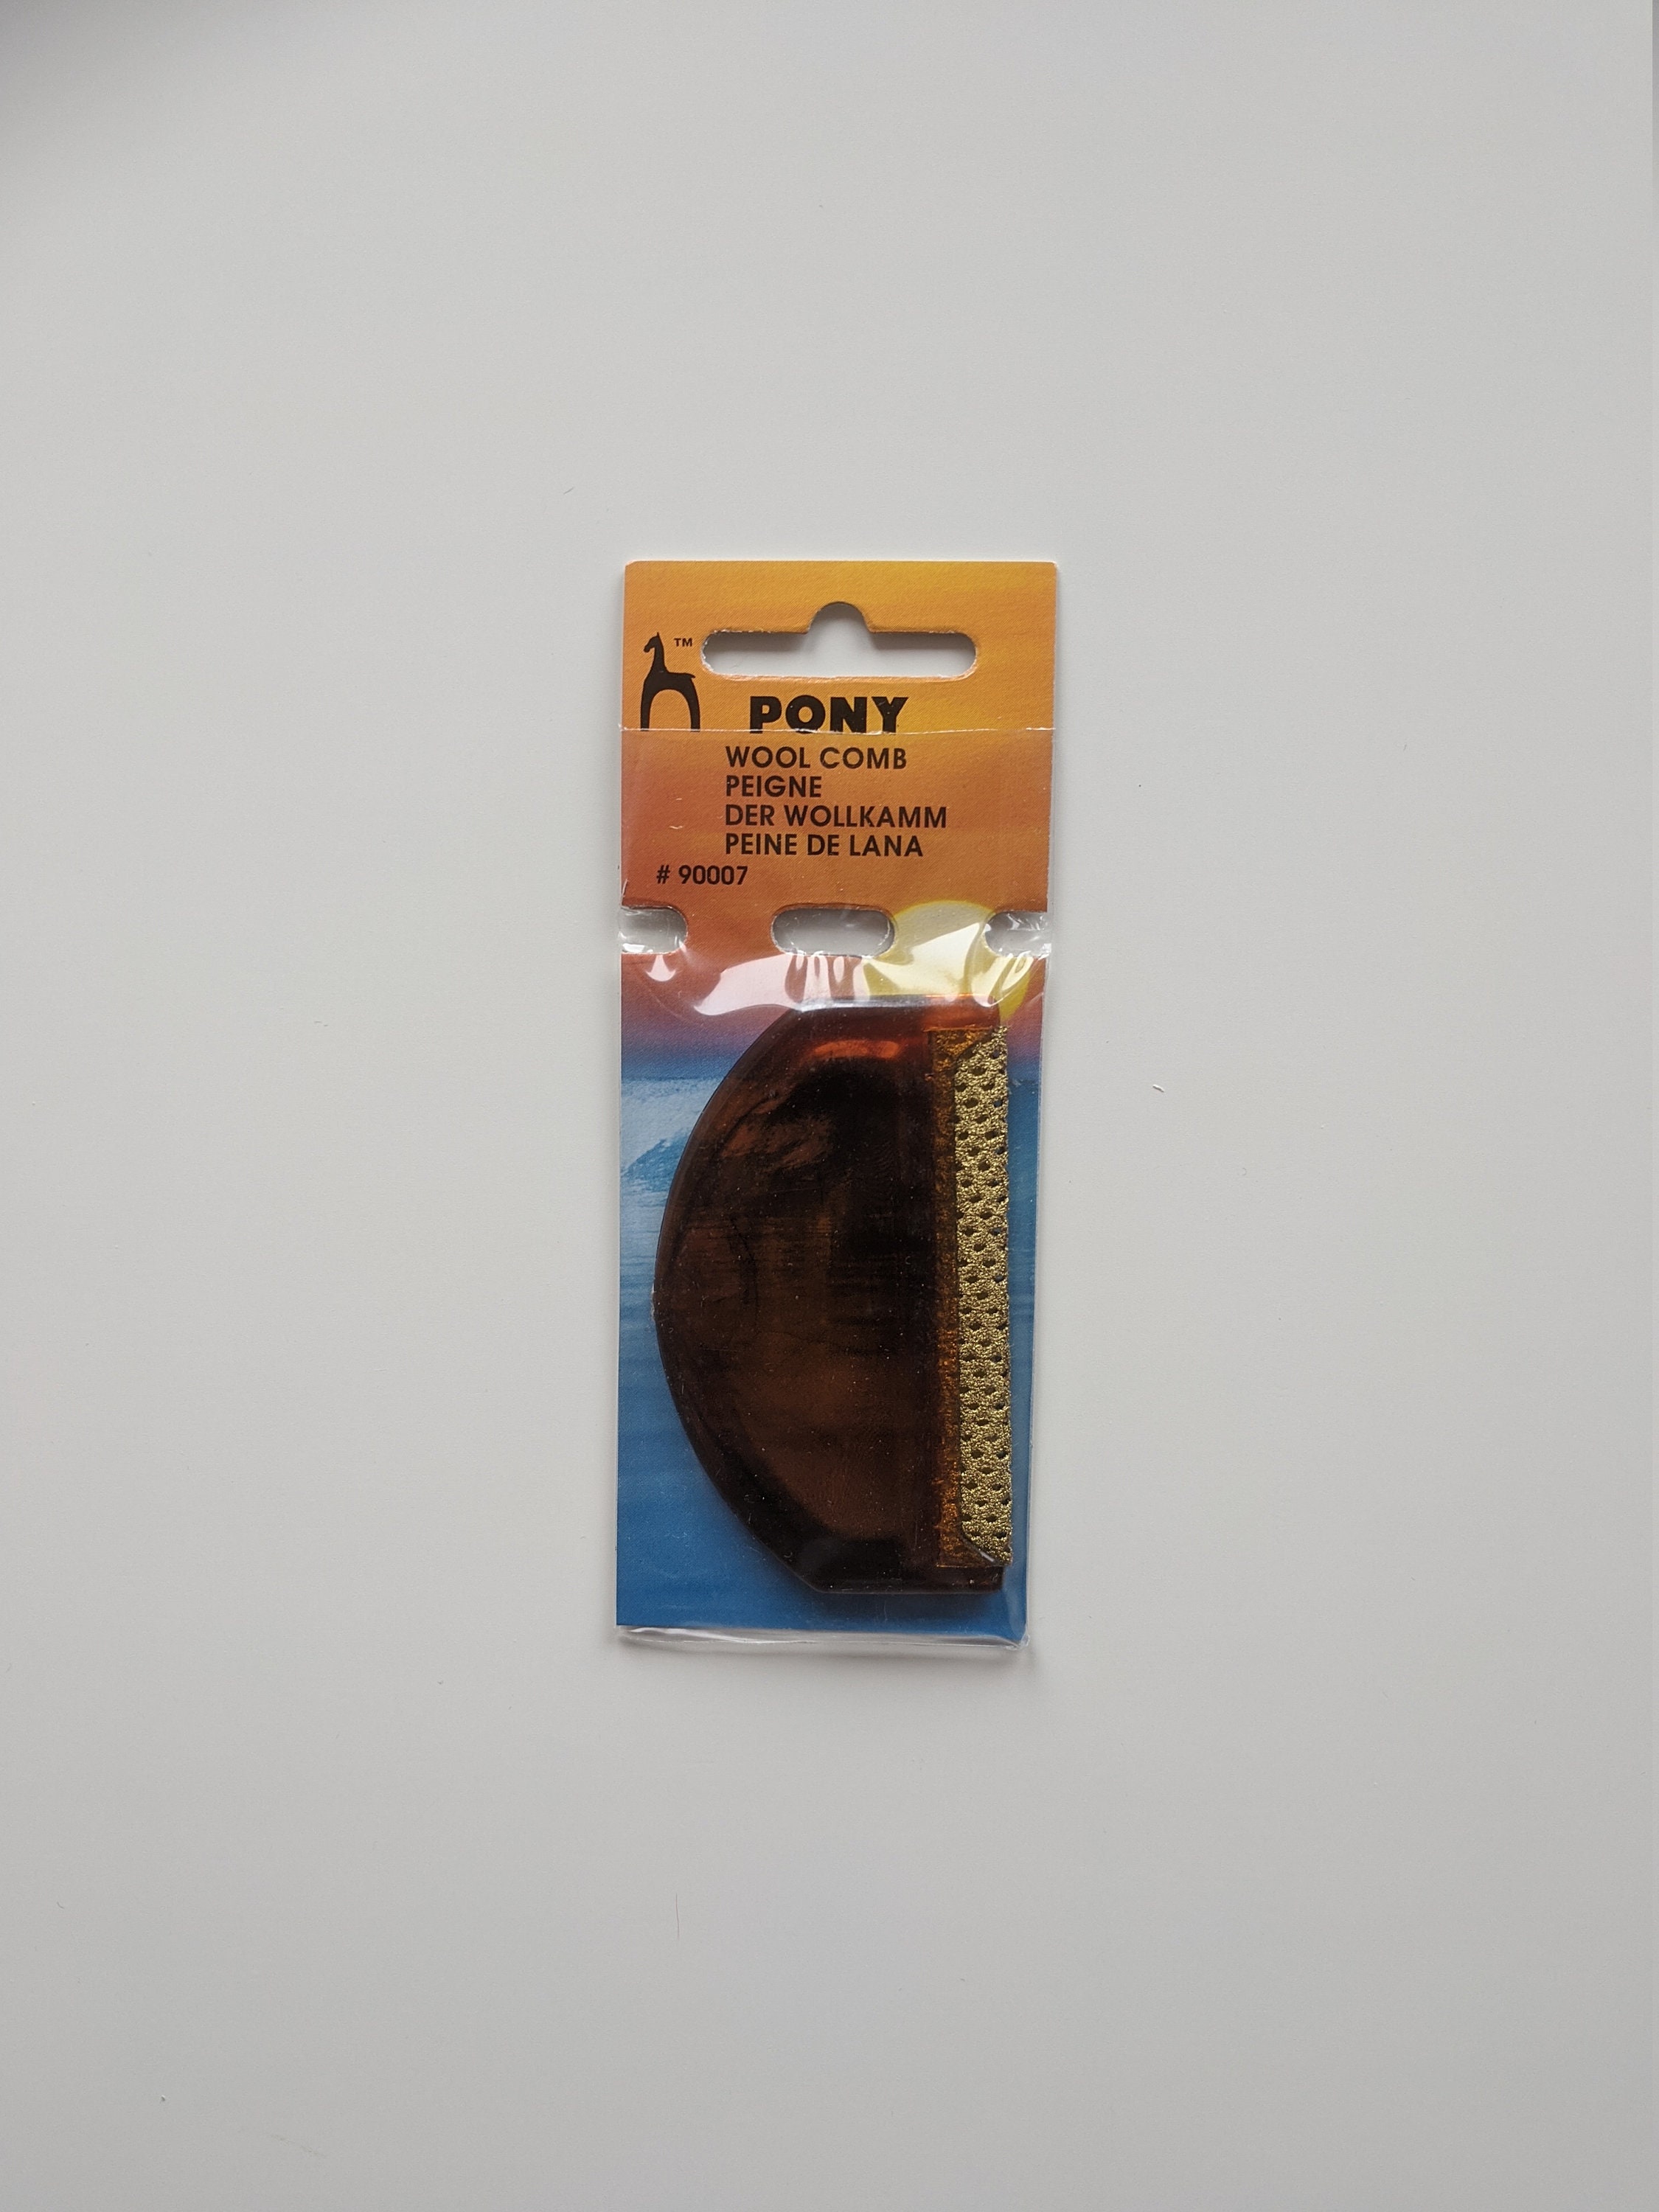 Pony Wool Comb